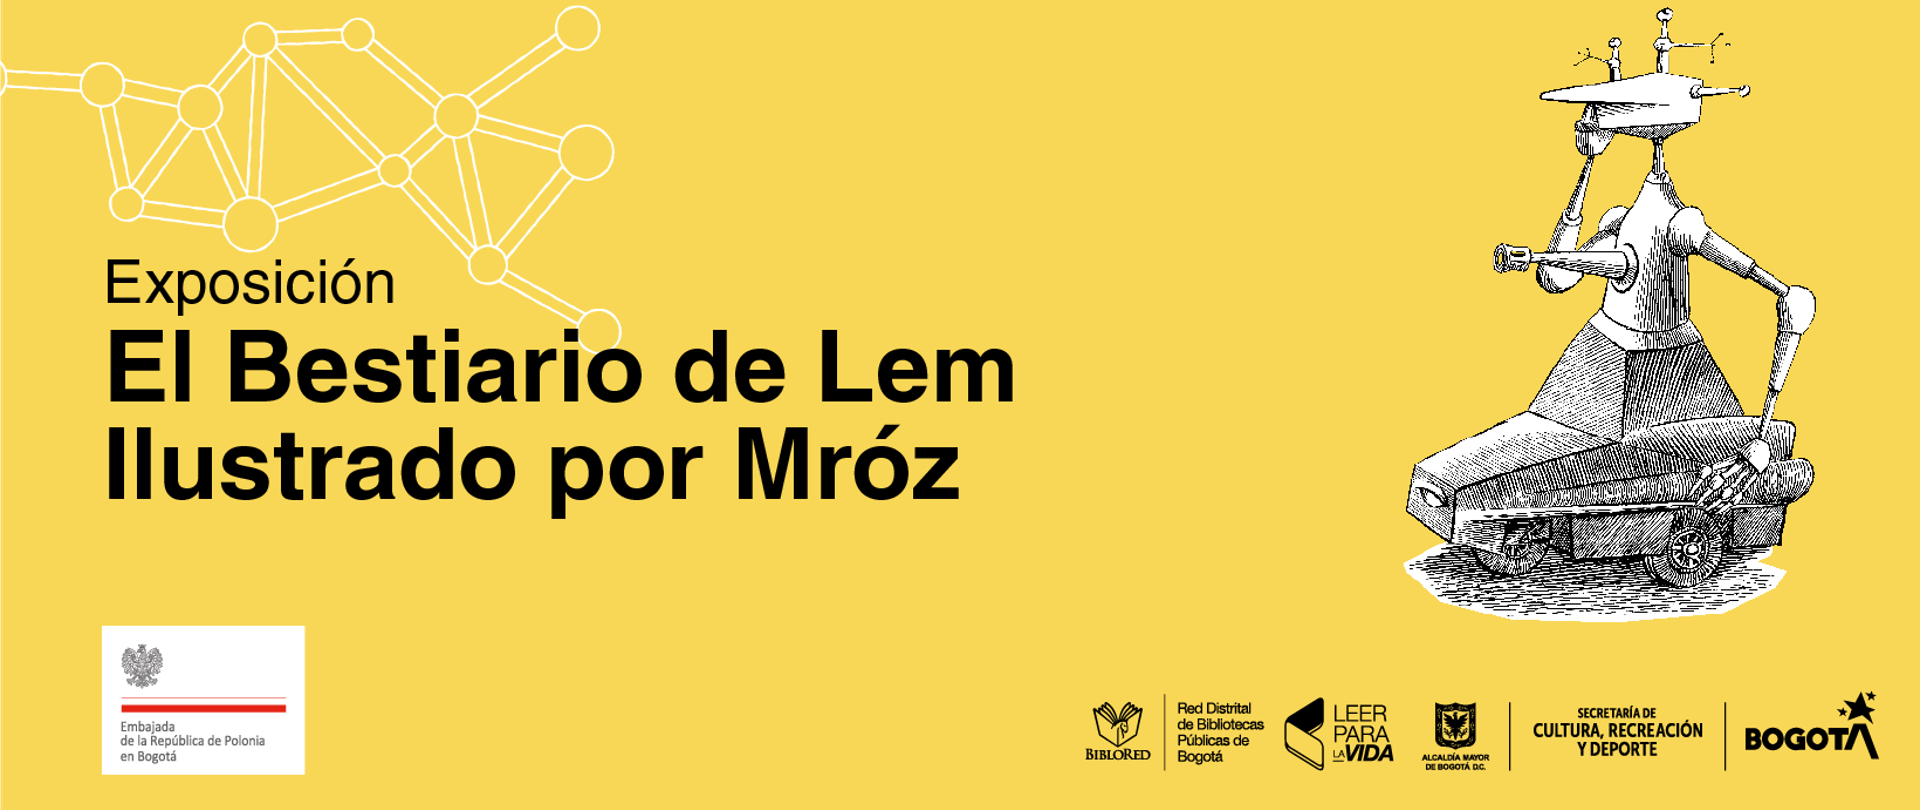 La exposición „El Bestiario de Lem ilustrado por Mroz” en BIBLORED en Bogotá 